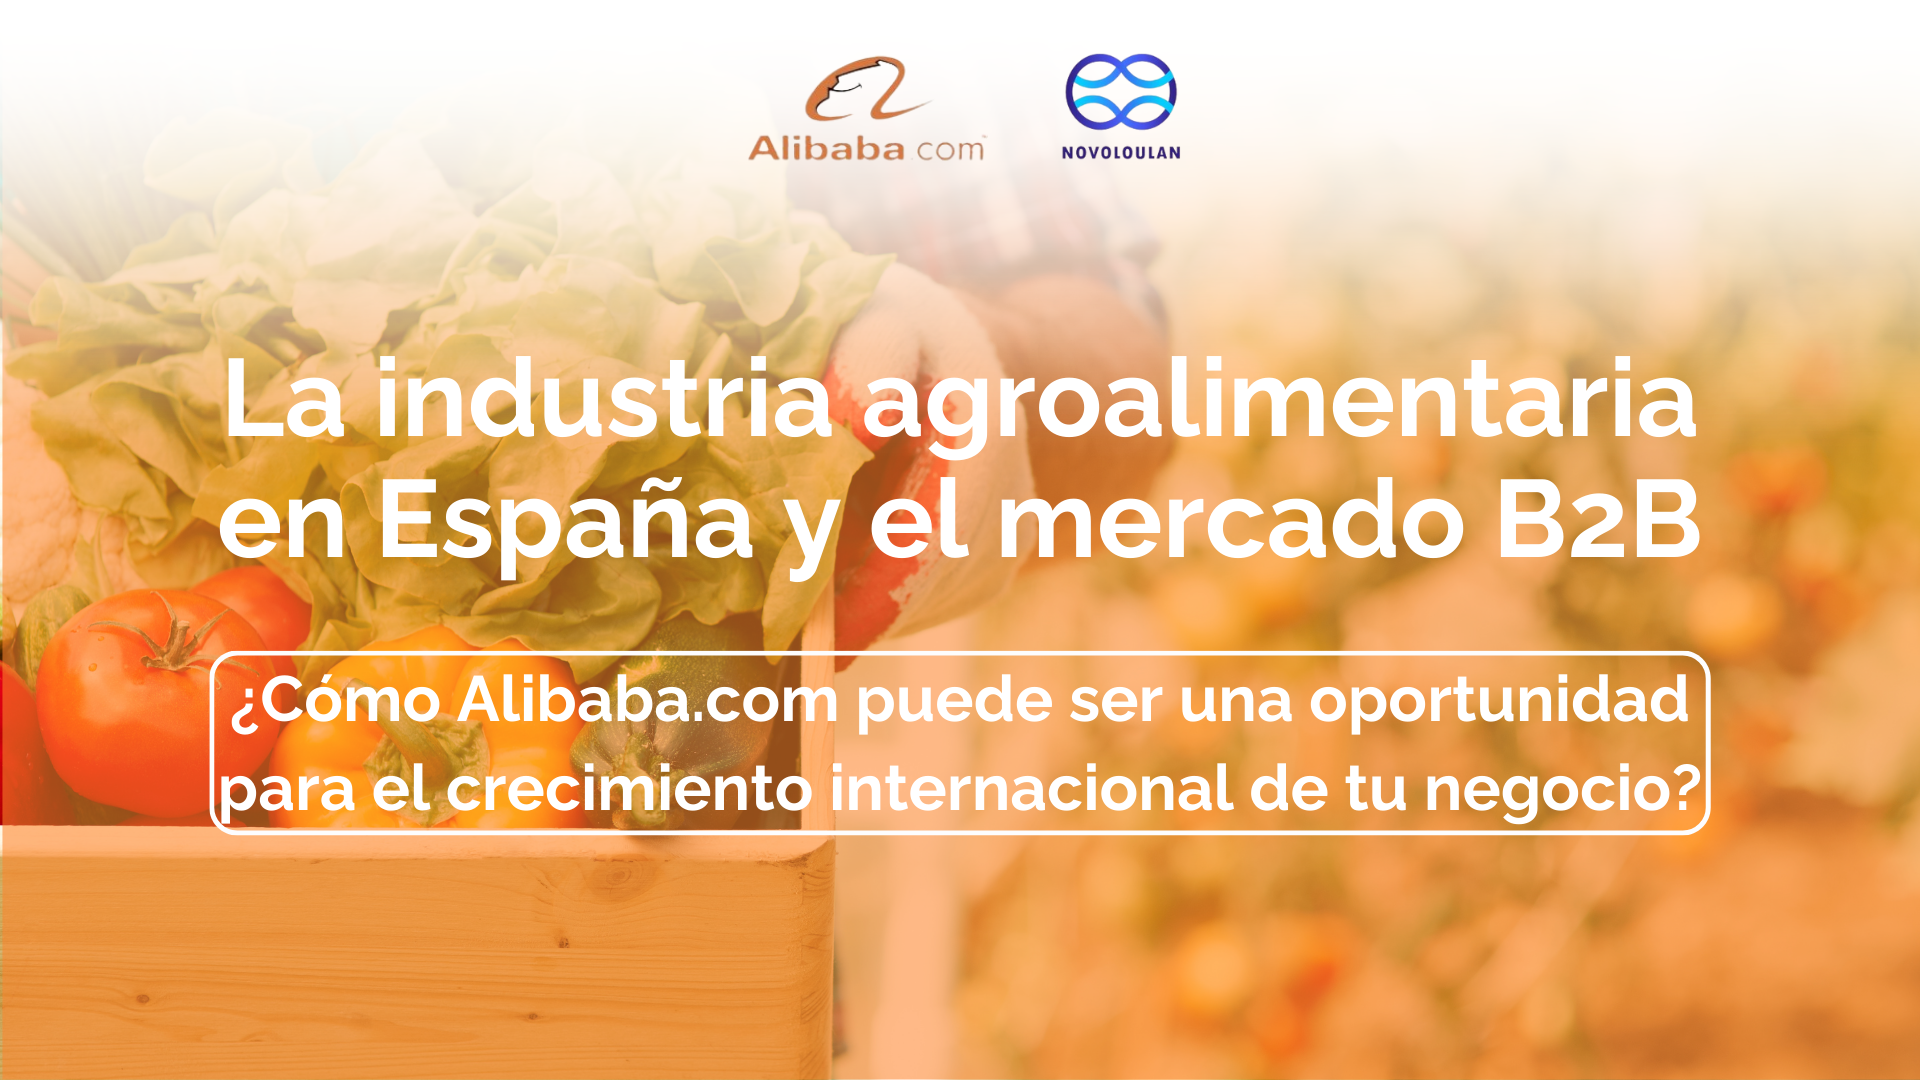 La industria agroalimentaria en España y el mercado B2B: ¿Una oportunidad perdida?